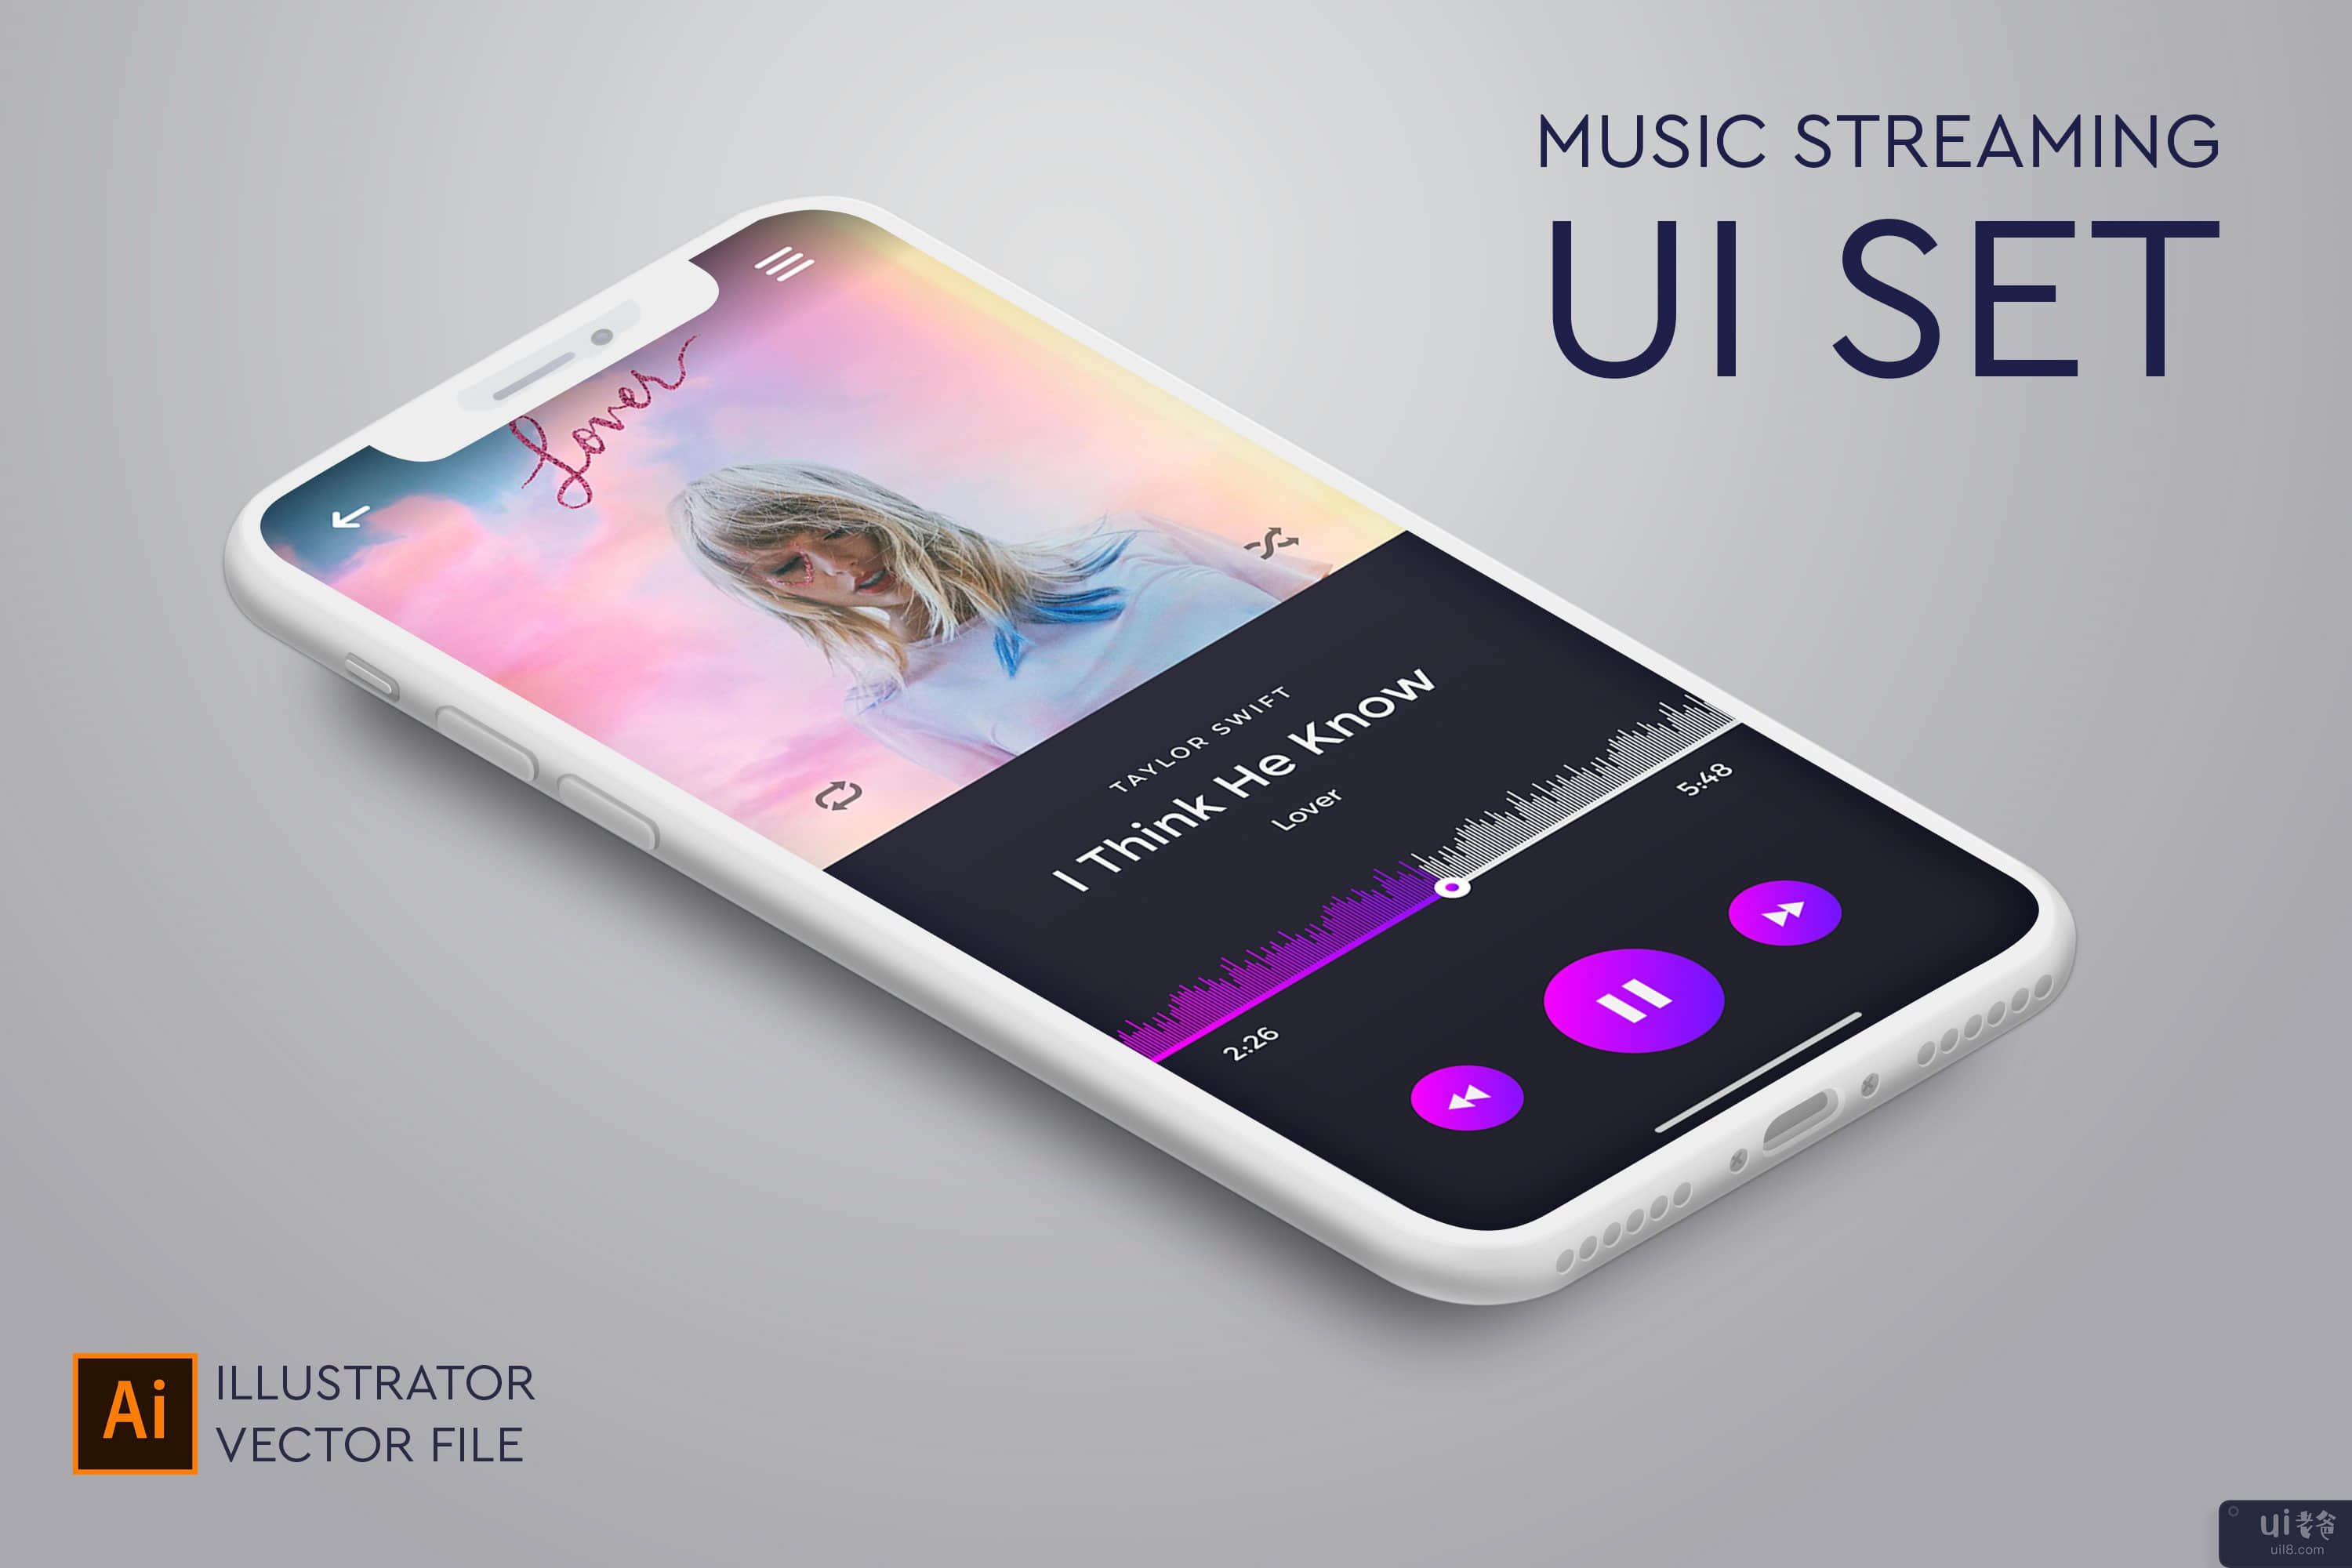 用于在线音乐流媒体的音乐应用 UI 设置(Music app UI set for online music streaming)插图1